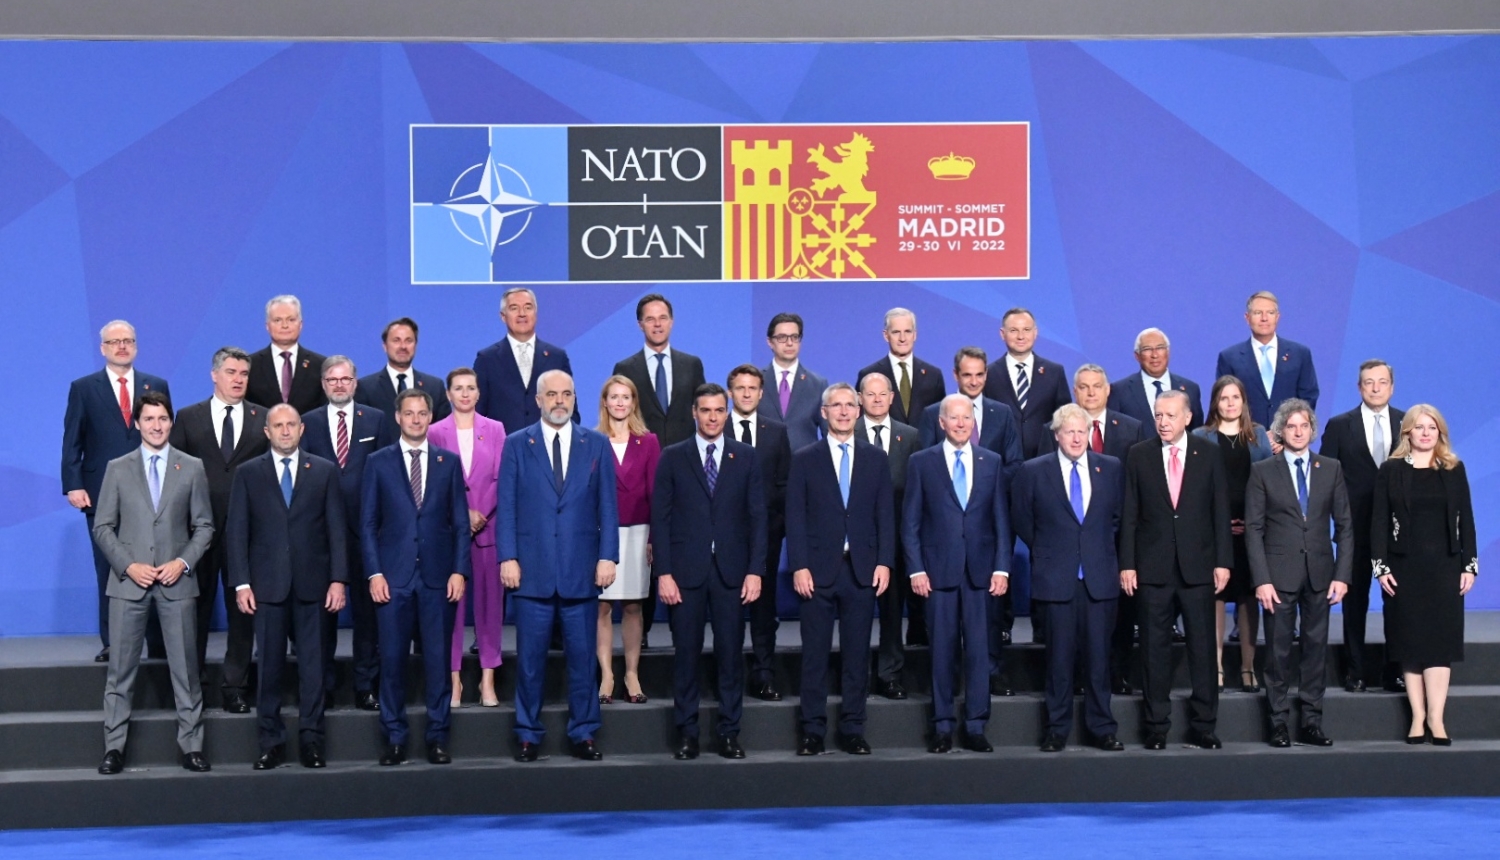 NATO valstu un valdību vadītāju samits Madridē 2022. gada 29. jūnijā. Valstu un valdību vadītāju kopbilde.